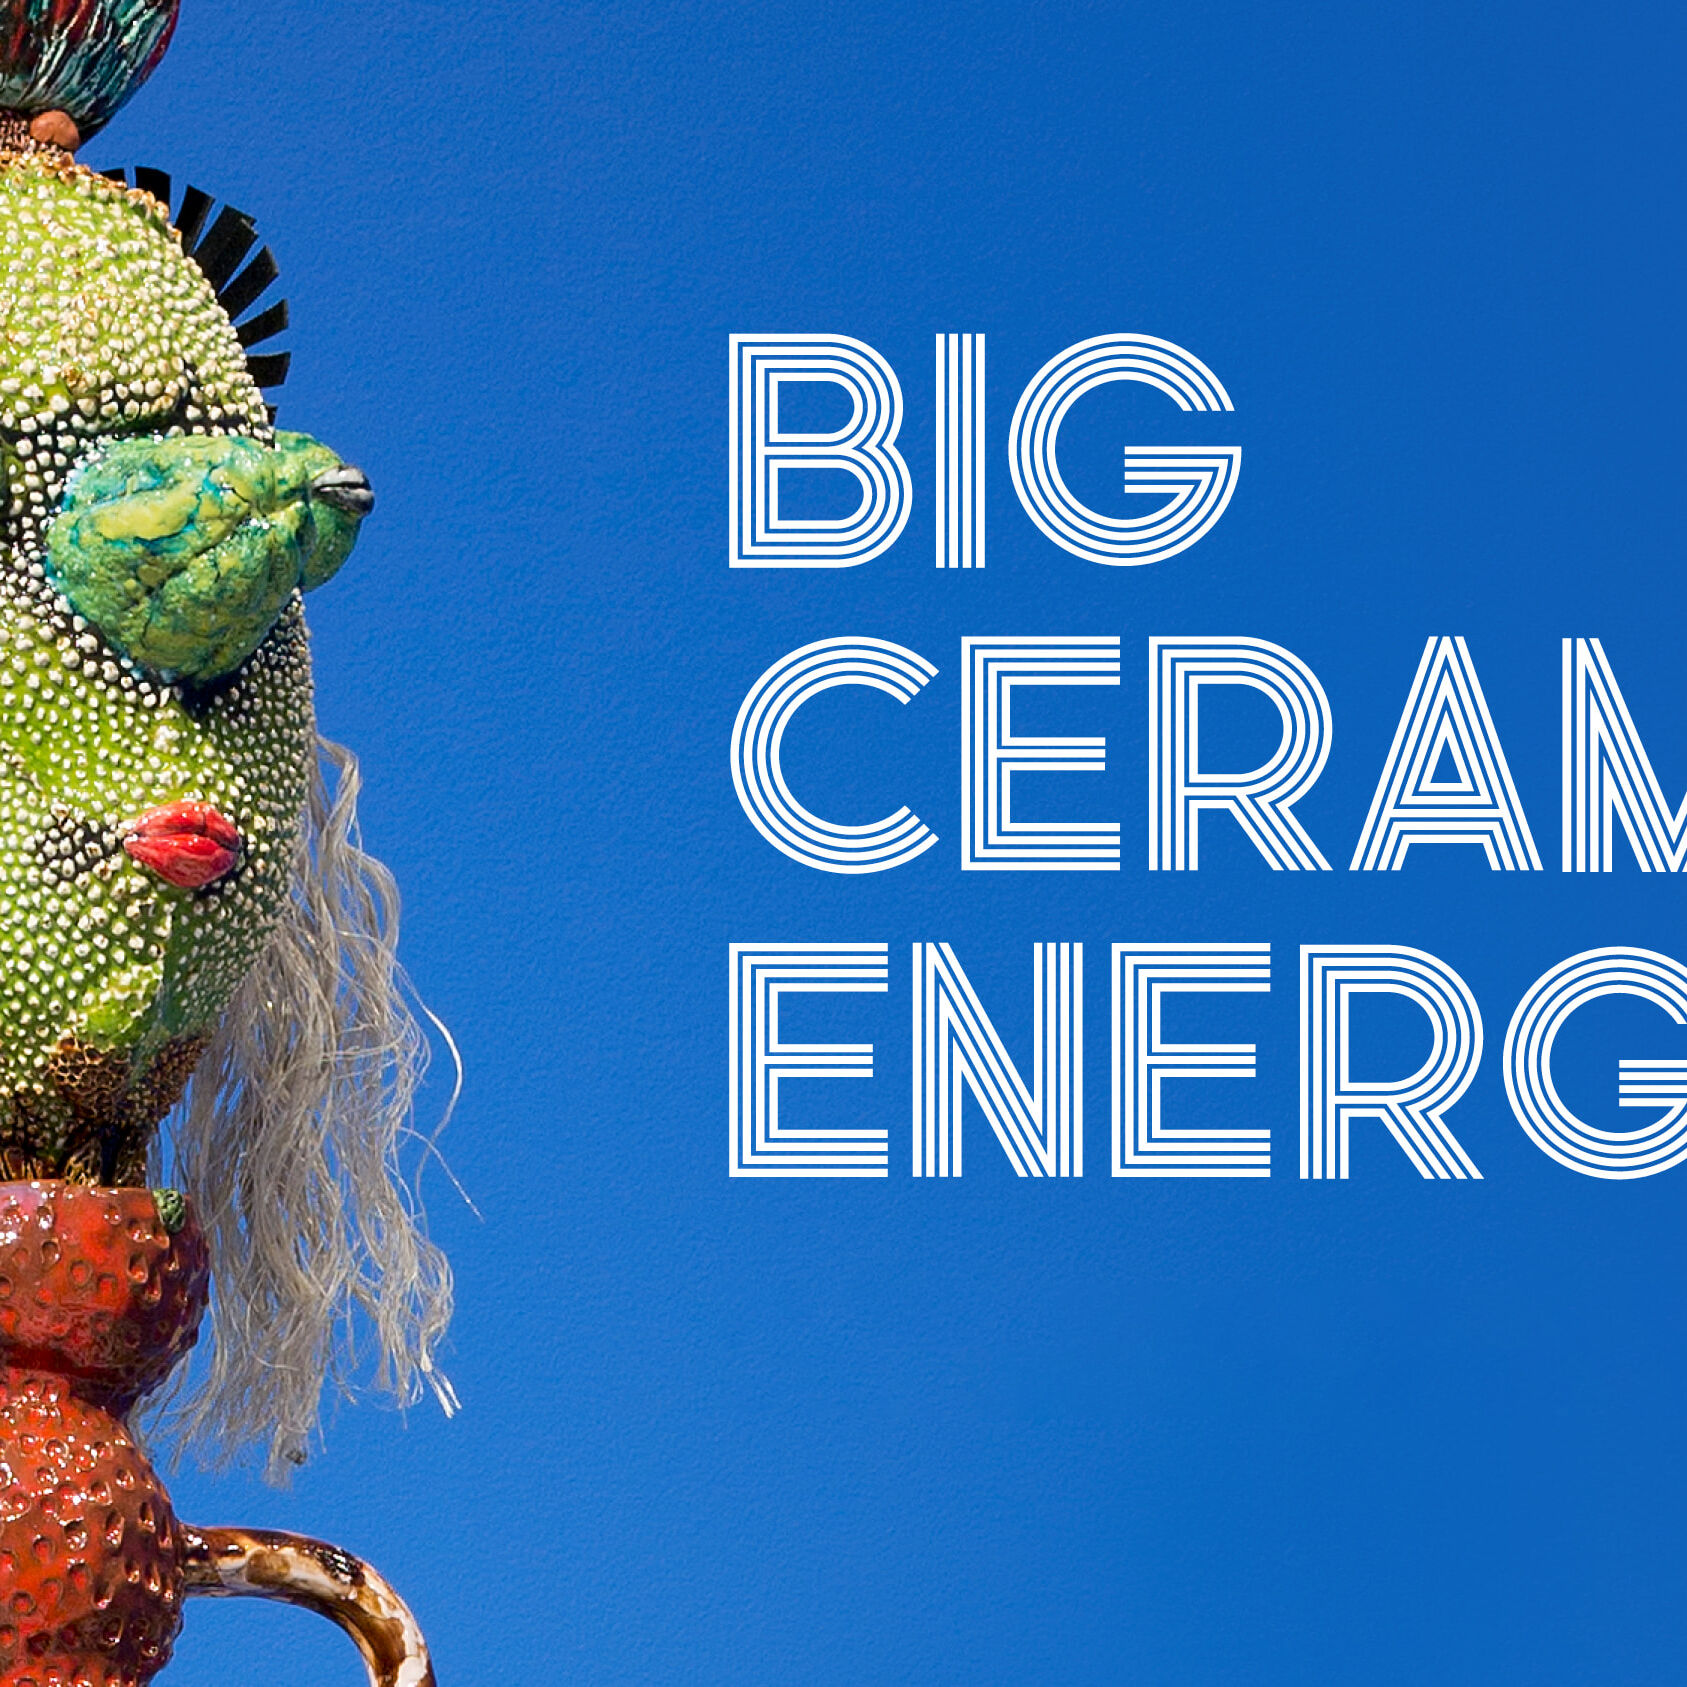 SAM_Big Ceramic Energy_exhibition treatment